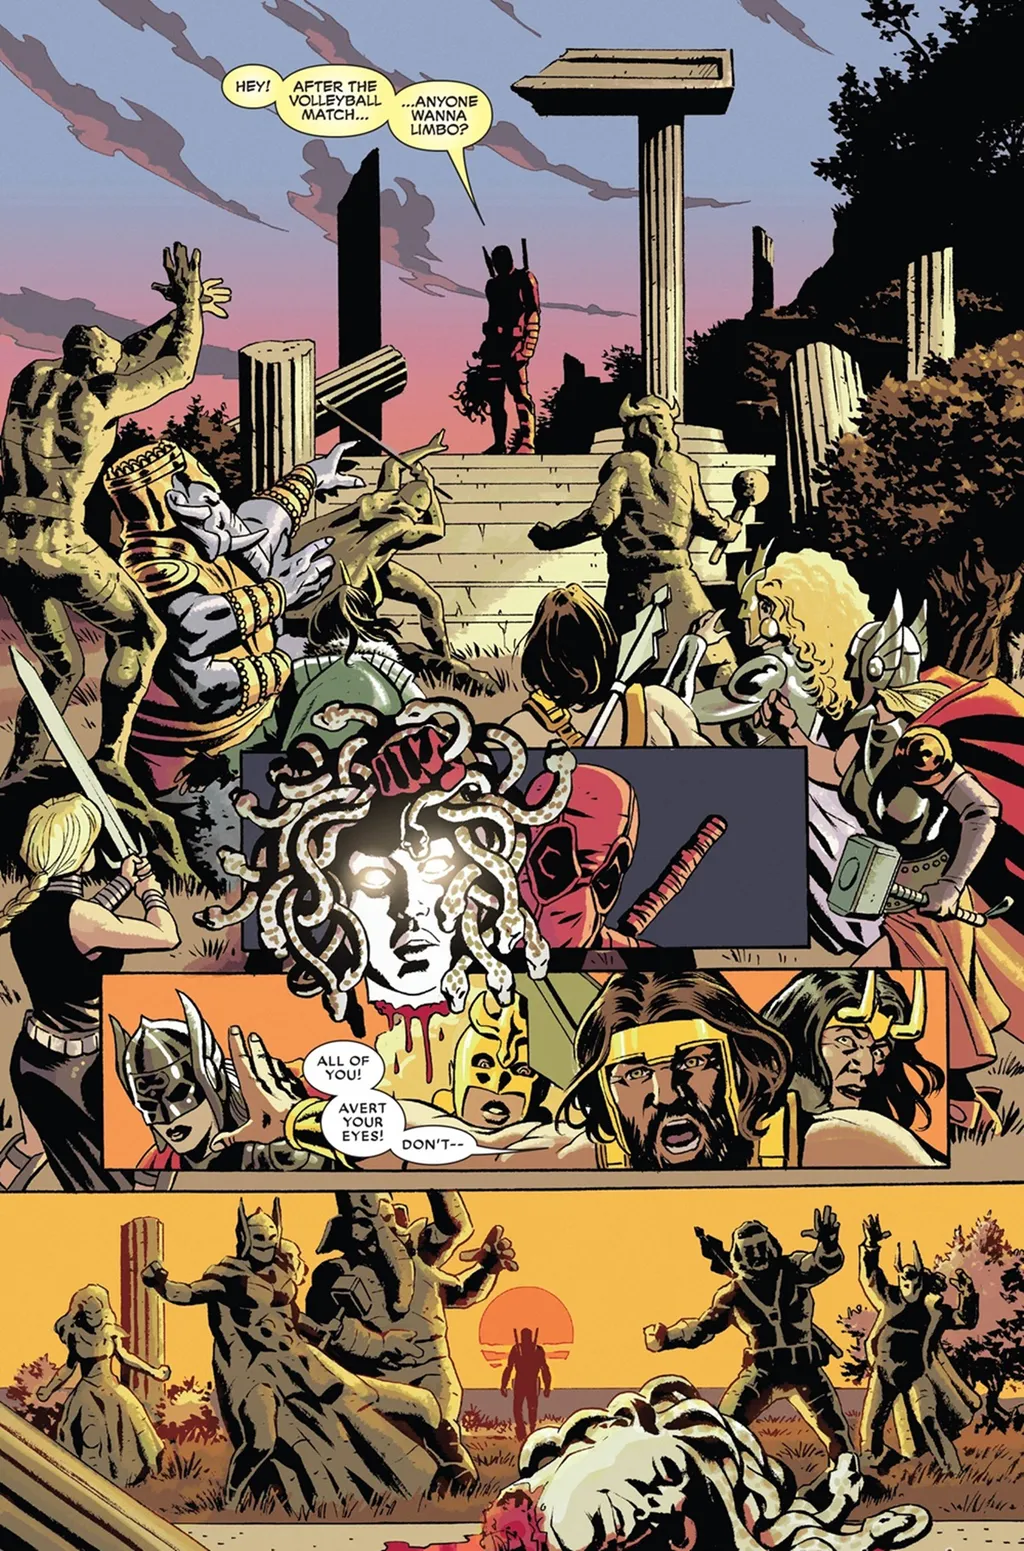 Deadpool transforma Thor e outros deuses em pedra com a cabeça da Medusa (Imagem: Reprodução/Marvel Comics)